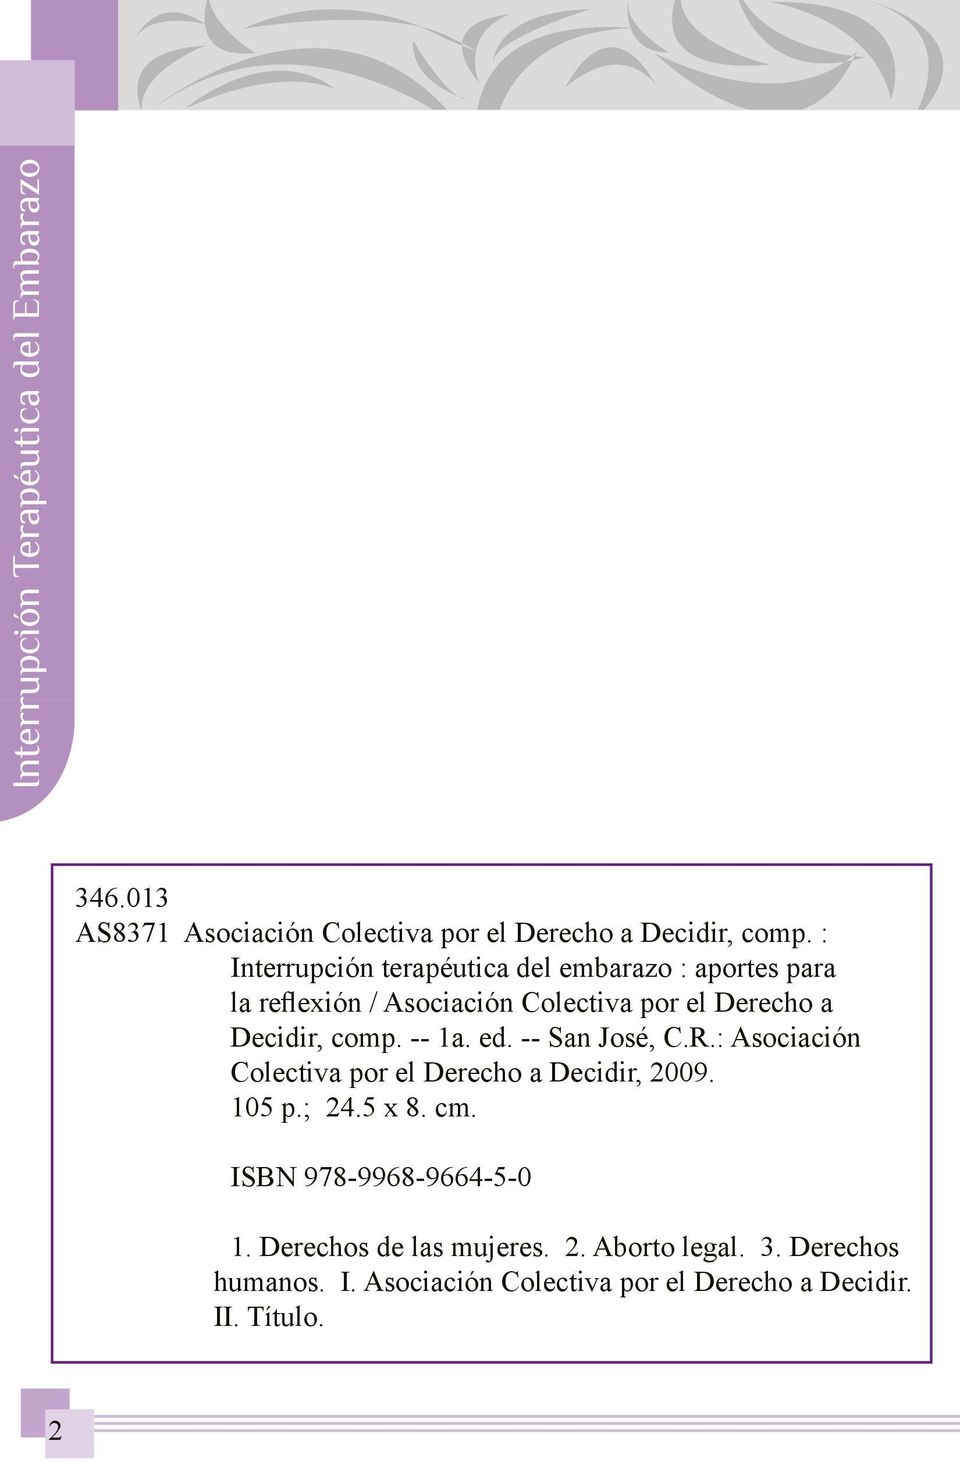 -- 1a. ed. -- San José, C.R.: Asociación Colectiva por el Derecho a Decidir, 2009. 105 p.; 24.5 x 8. cm.